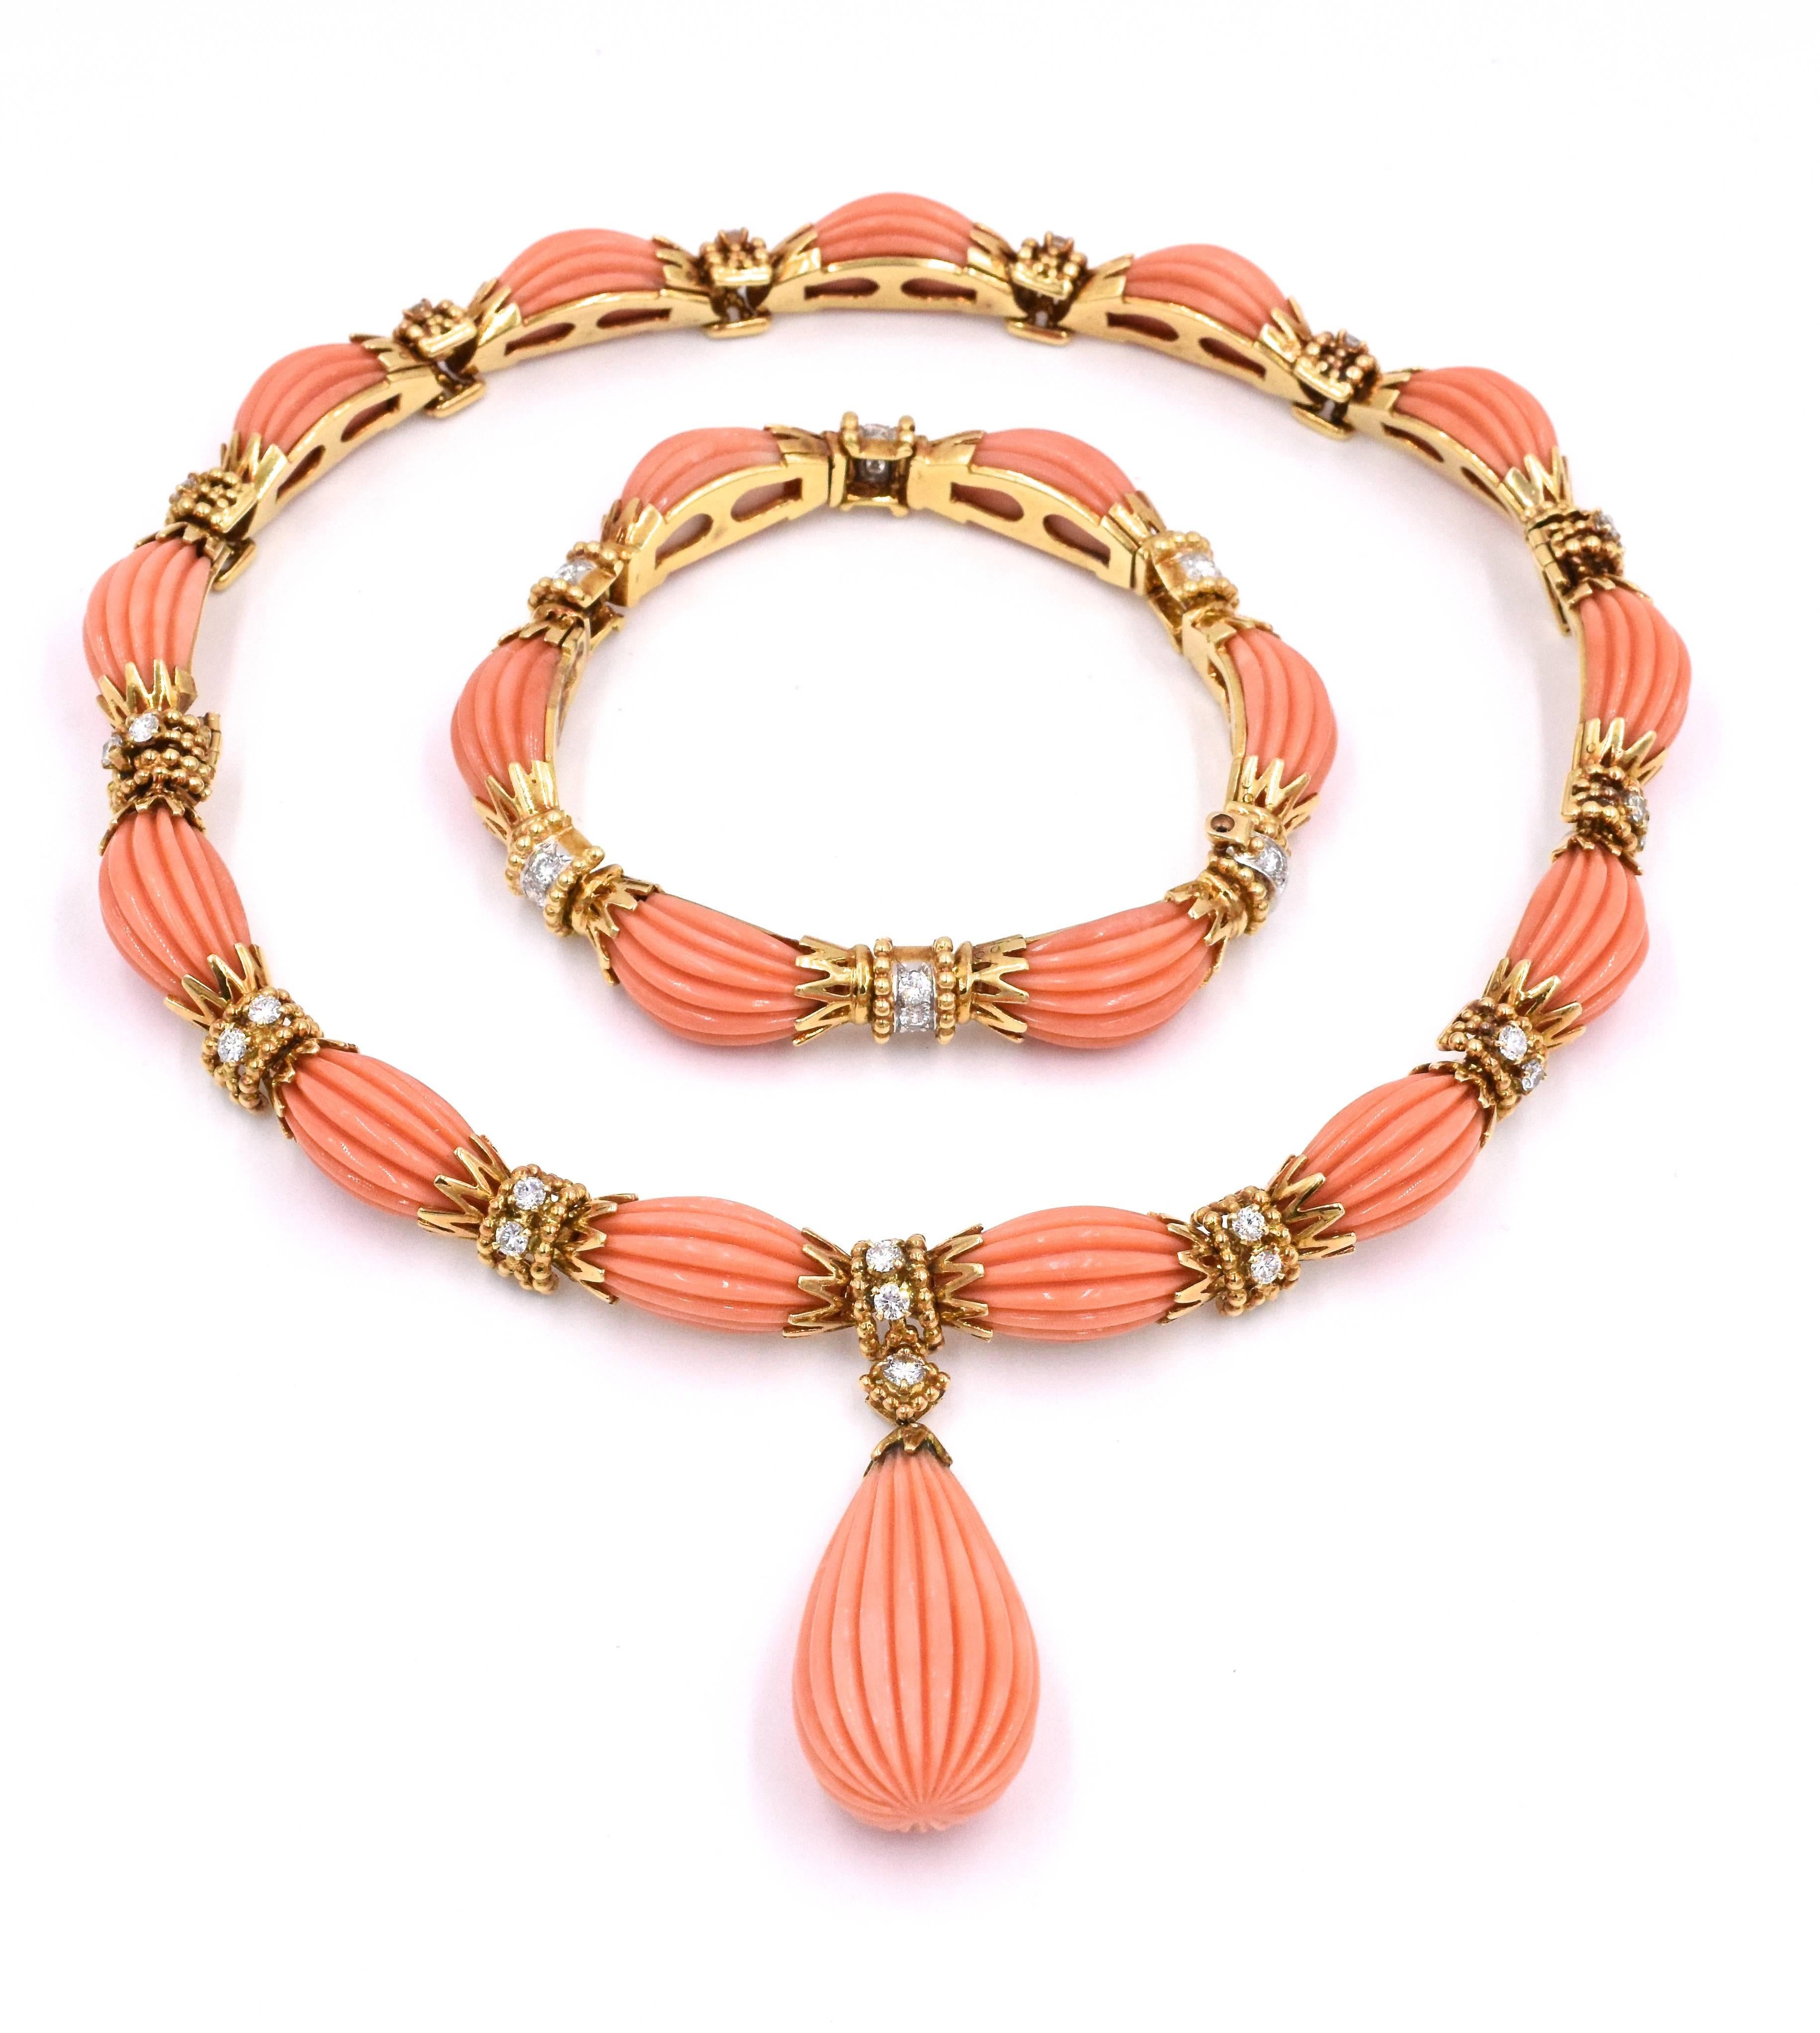 Magnifique ensemble de corail de couleur par Van Cleef & Arpels.
Comprenant un collier conçu comme une rangée continue de corail cabochon ovale cannelé, avec des liens de connexion abstraits sertis de diamants, qui comprennent un total de 26